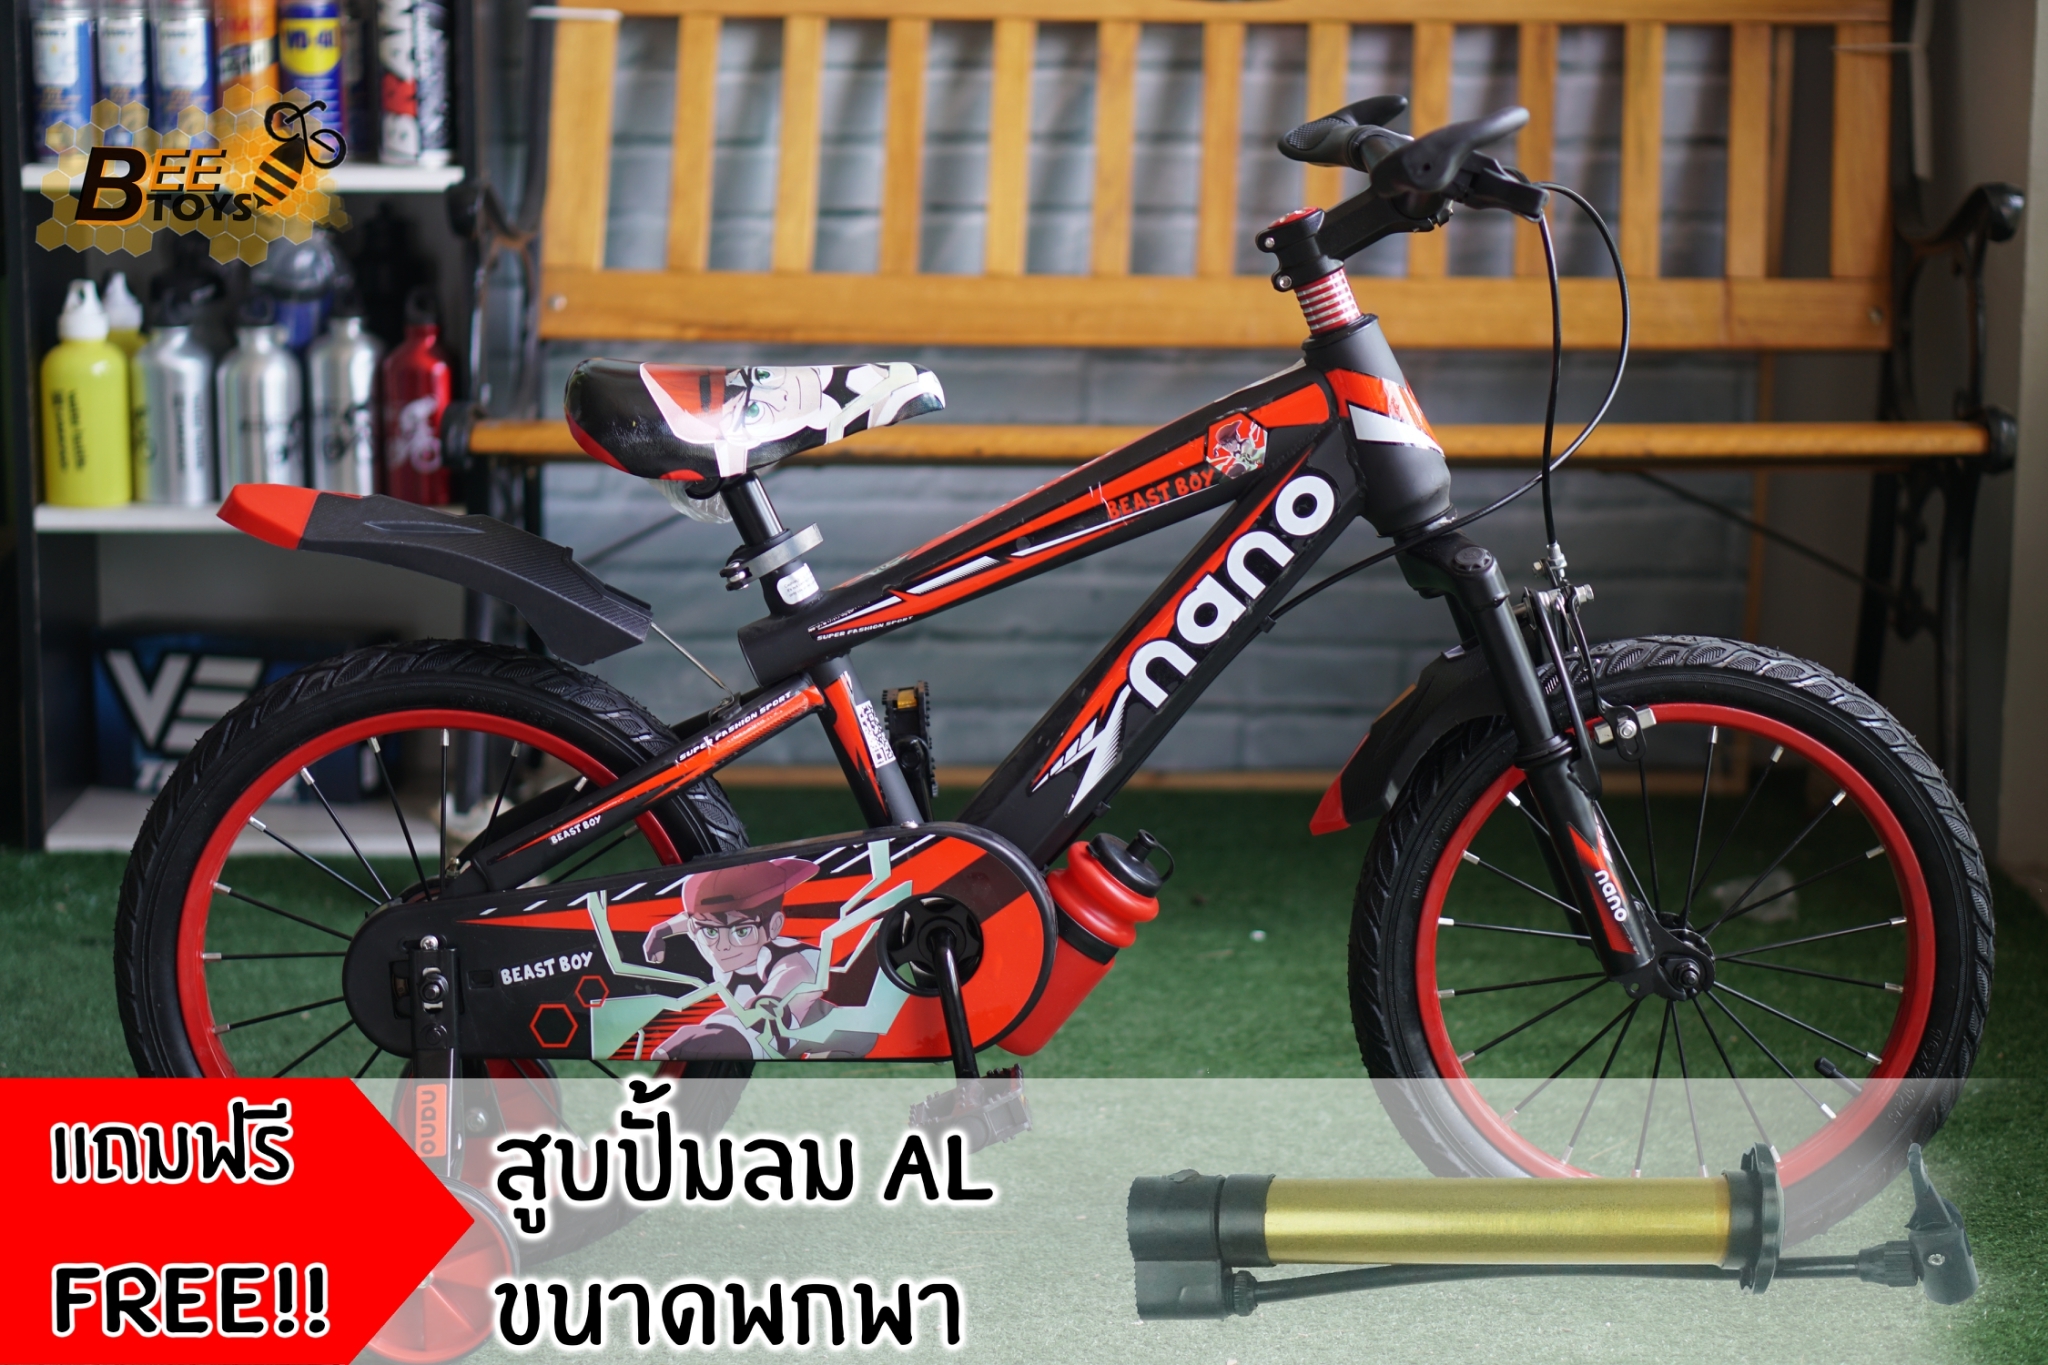 จักรยาน 16 นิ้ว Nano รุ่น Beast Boy ลายเจ้าหนูฮีโร่ โช้คหน้า สำหรับ เด็ก ชาย อายุ 4-7 ขวบ คุณภาพดี ราคาถูก beetoys เก็บเงินปลายทางได้